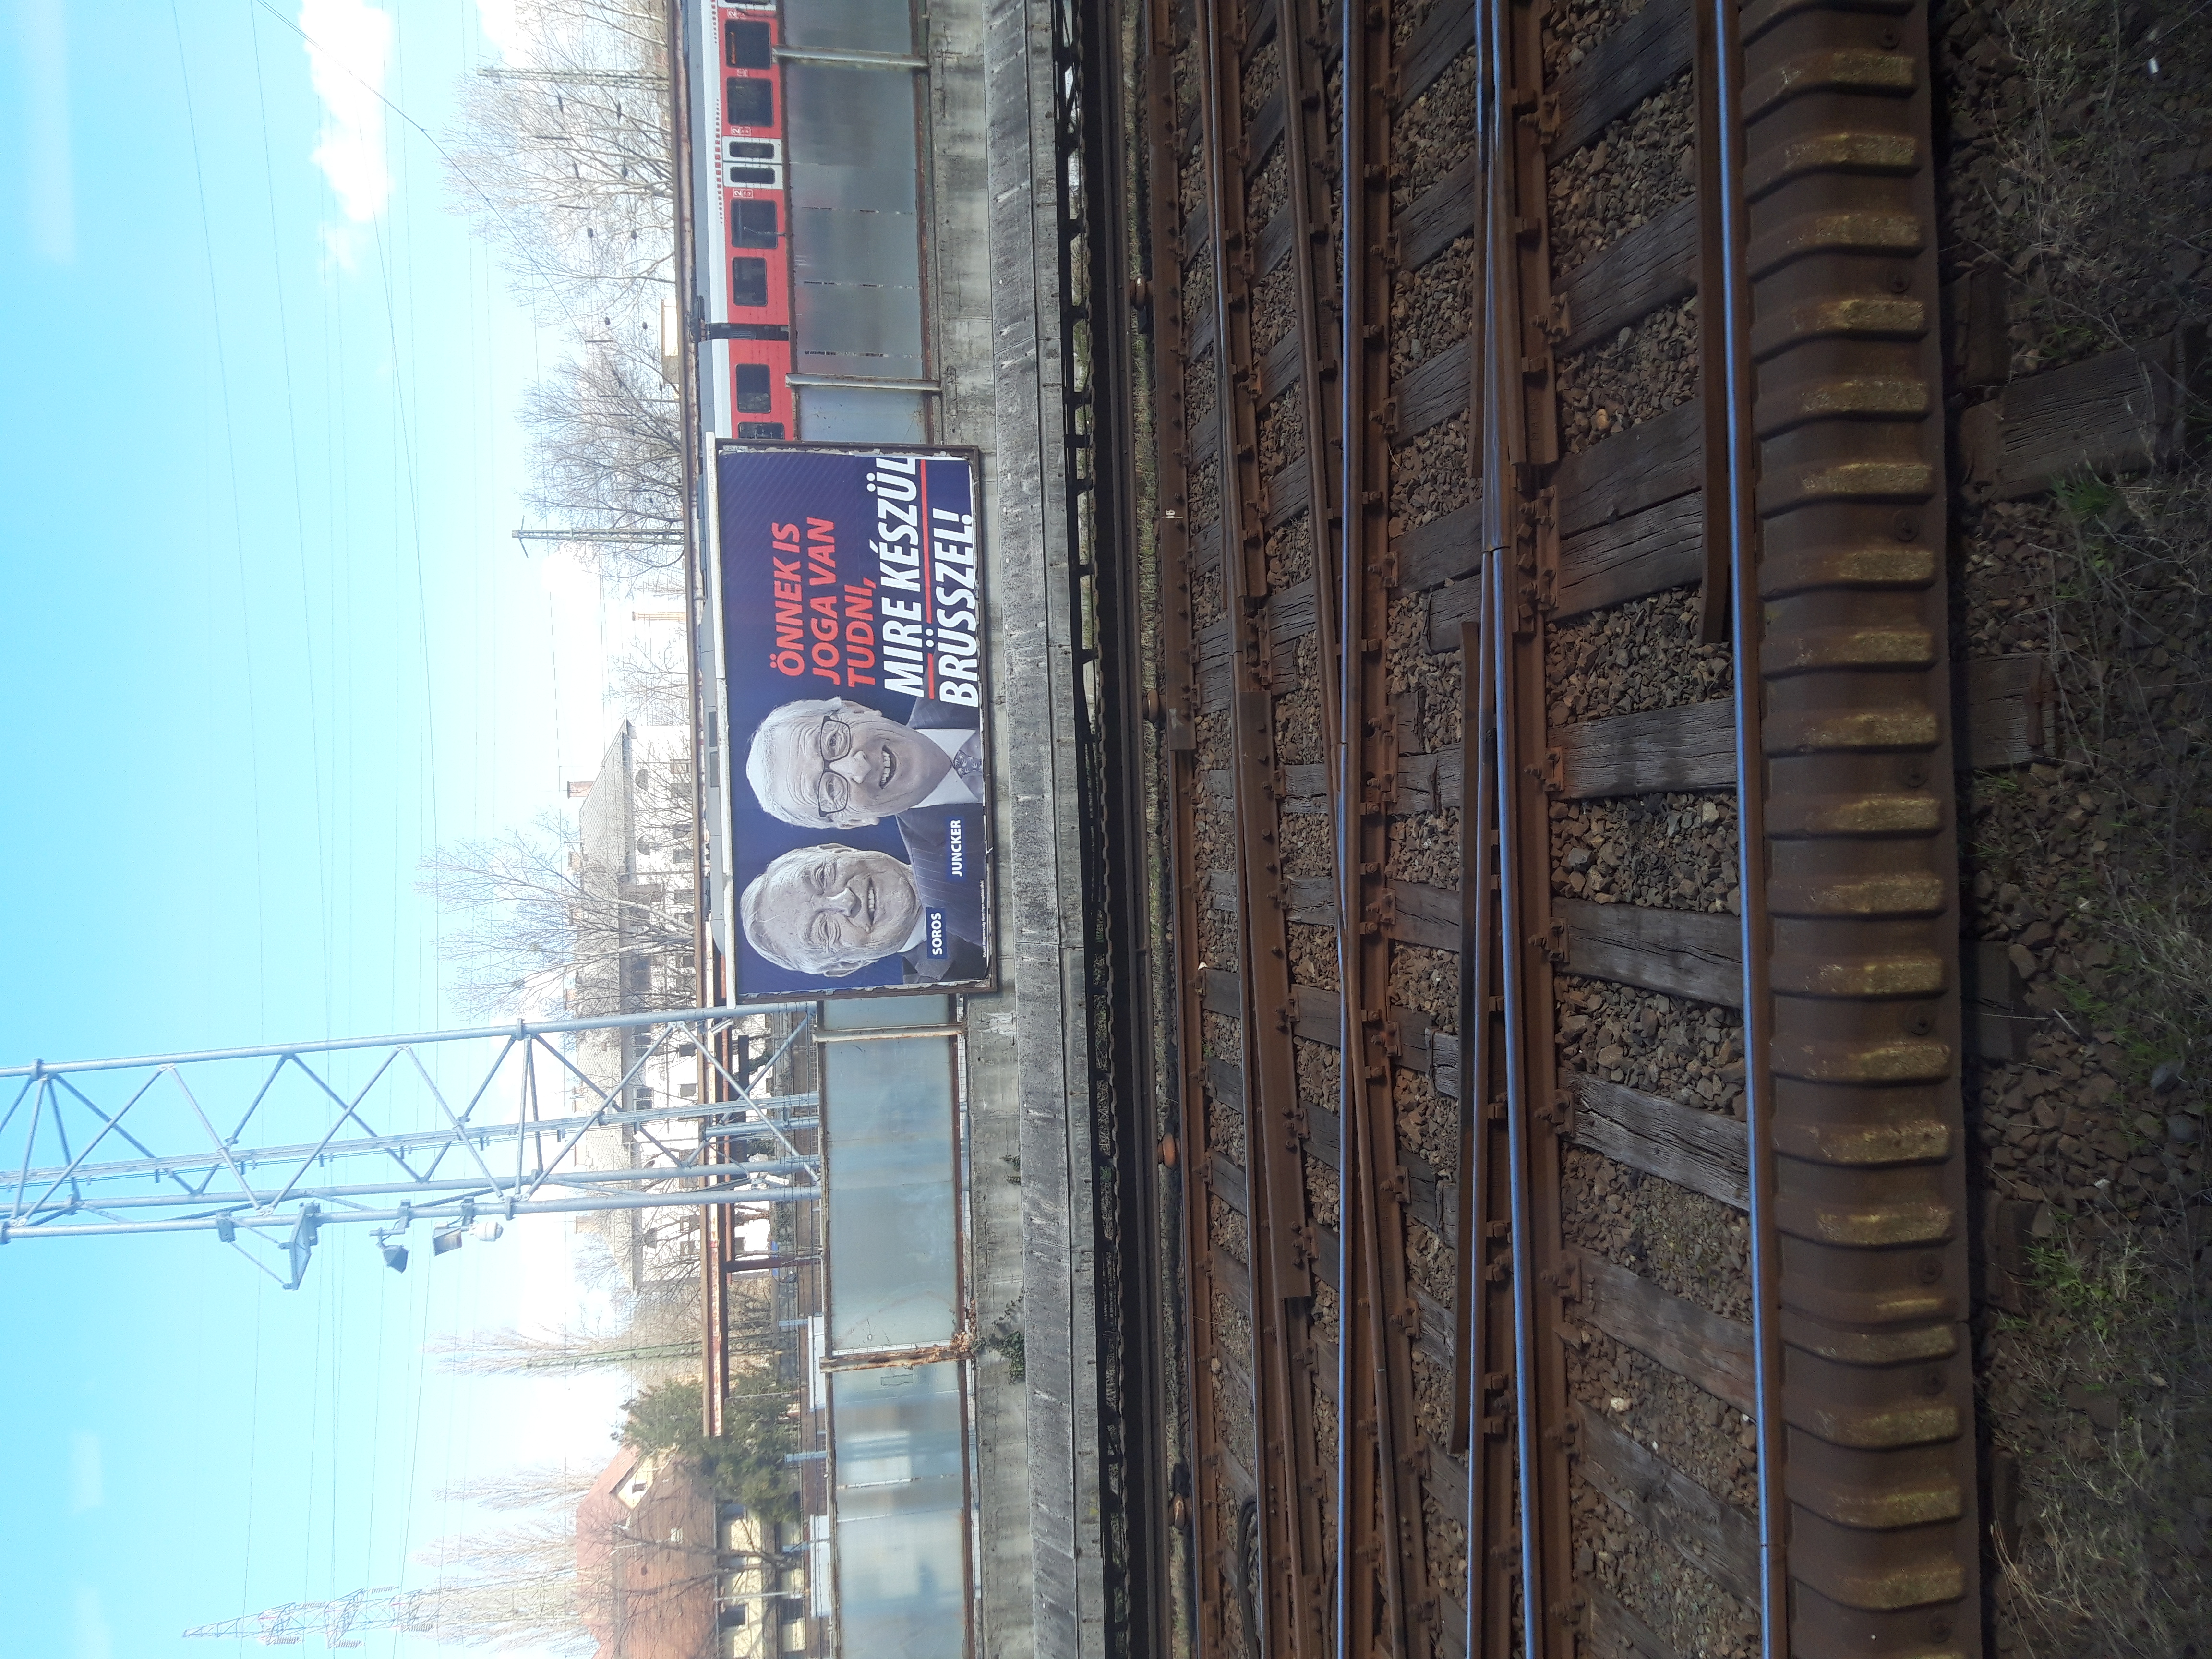 Manfred Weber ezt a Kőbánya-Kispest vasútállomáson kihelyezett plakátot akár ki is szúrhatta a reptérről a városba tartó útján.